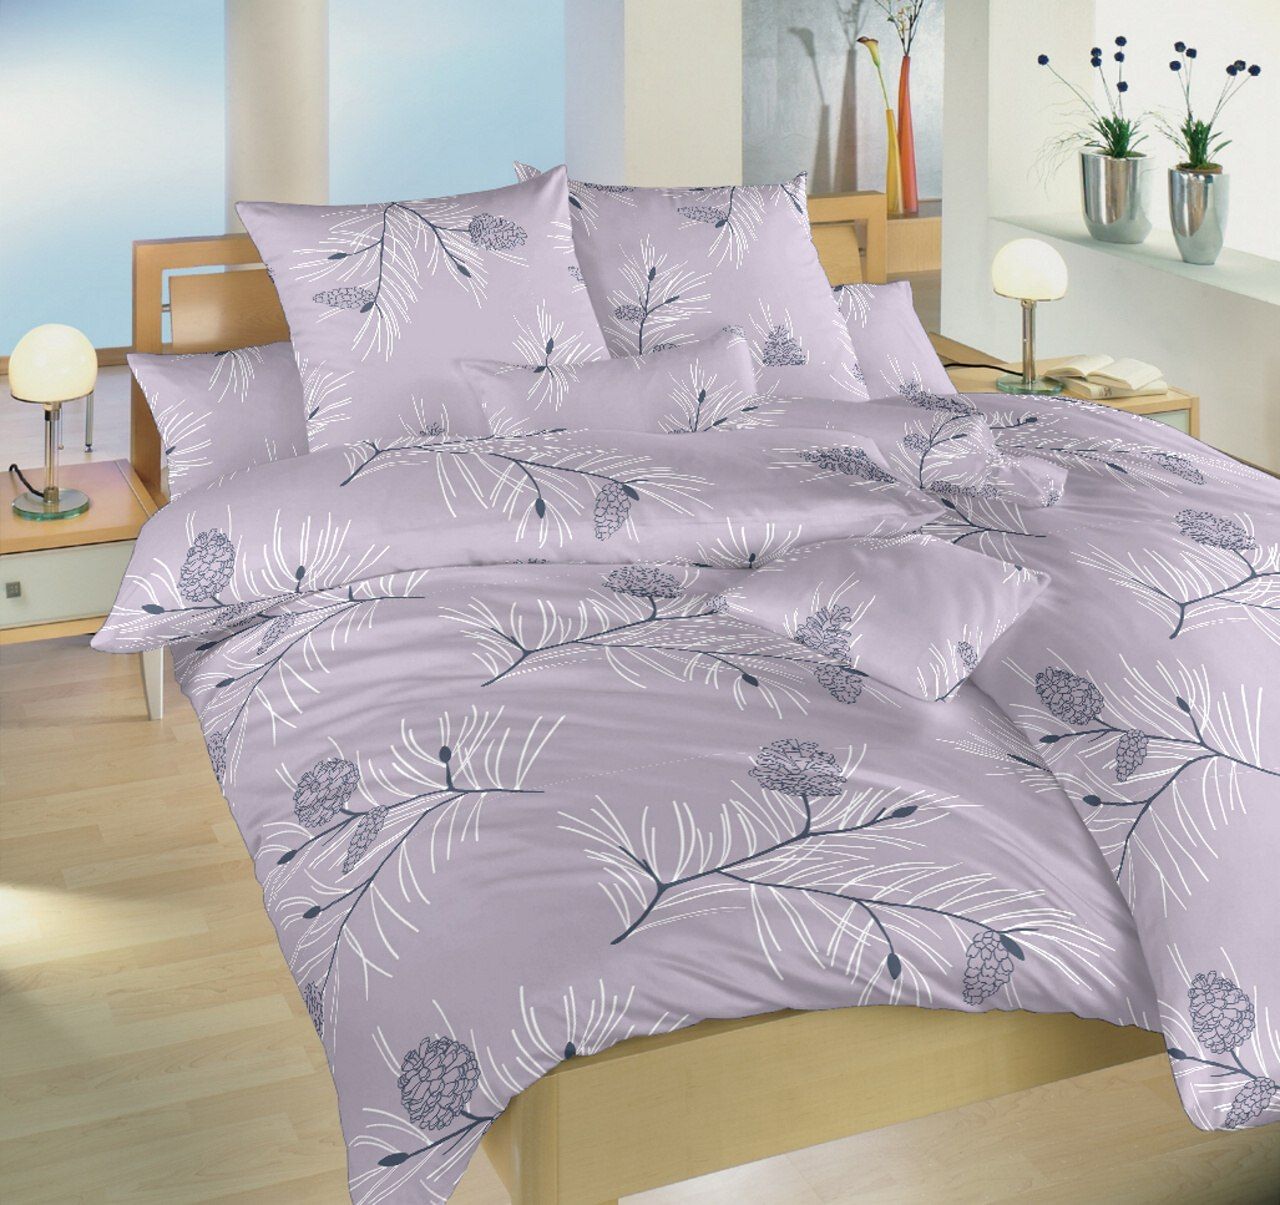 Dadka Povlečení bavlna Jehličí violet 240x220, 2x70x90 cm